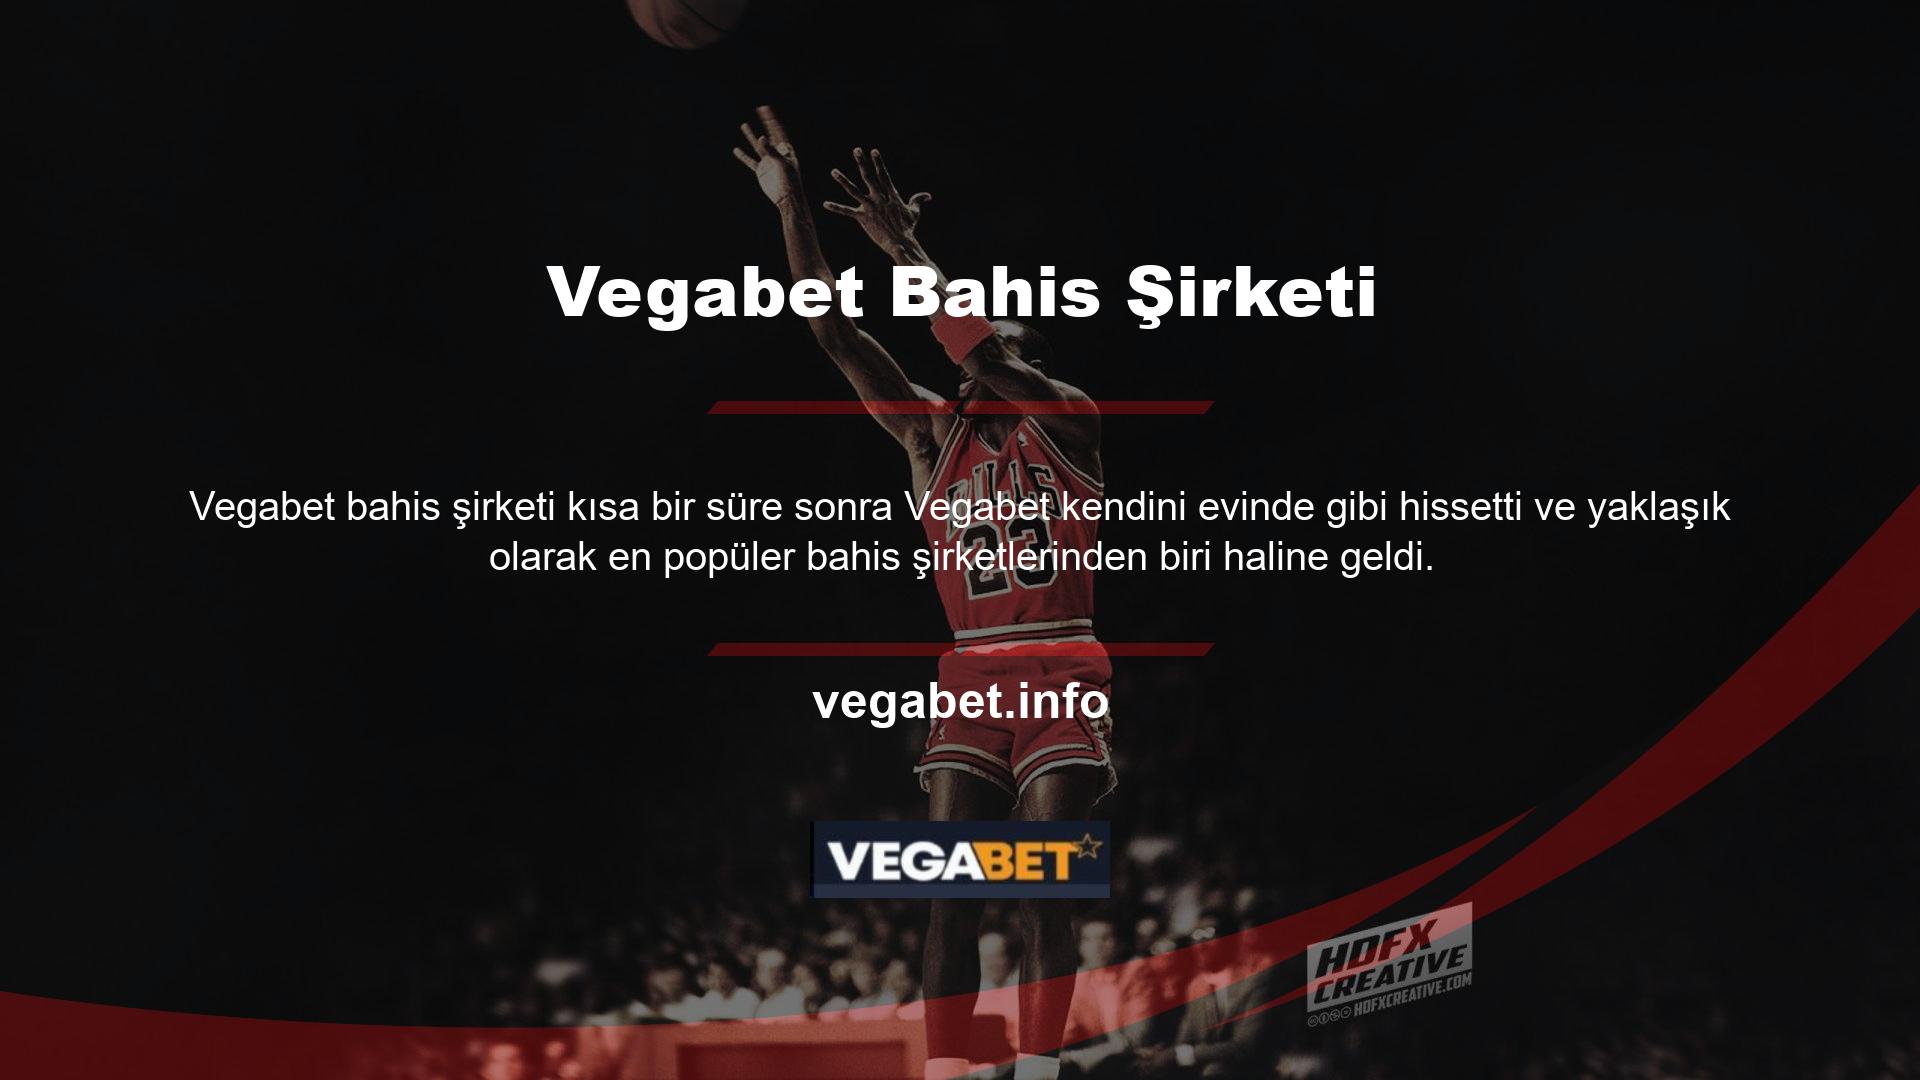 Vegabet web sitesi 'Türkçe kategorisi altında faaliyet göstermektedir